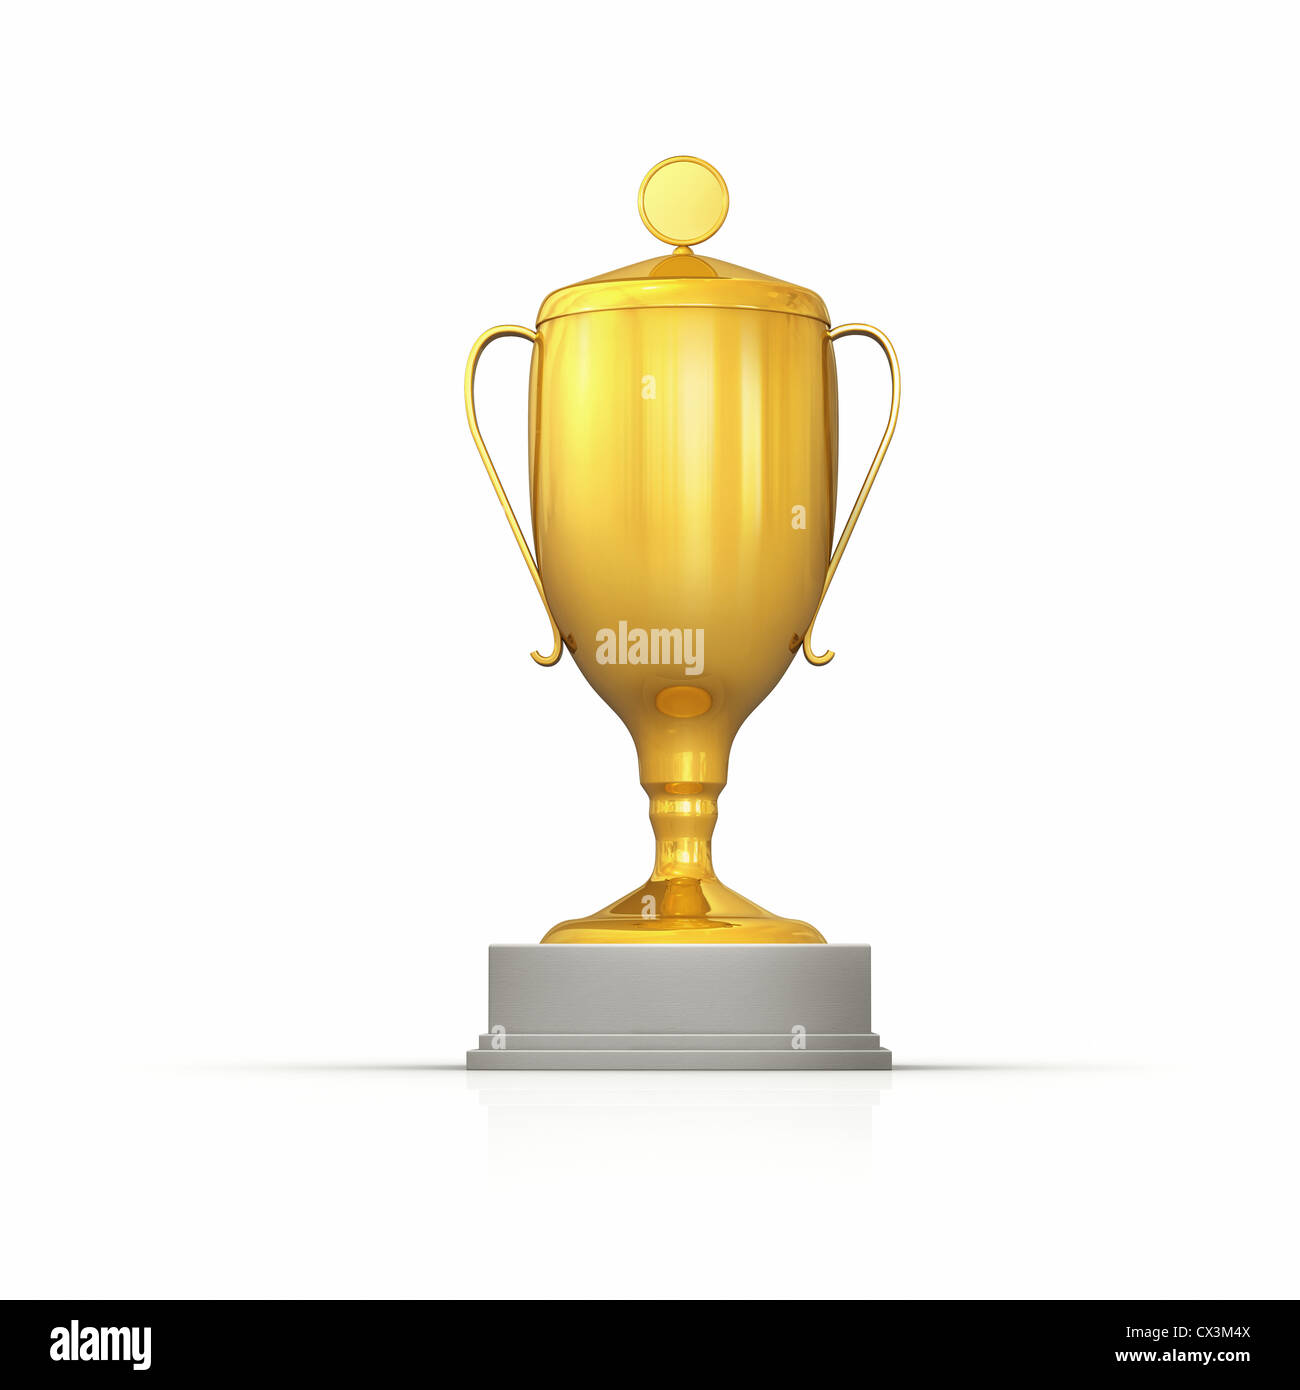 Goldener Pokal Auf Weissem Hintergrund - Gold Cup Trophy auf weißem Hintergrund Stockfoto